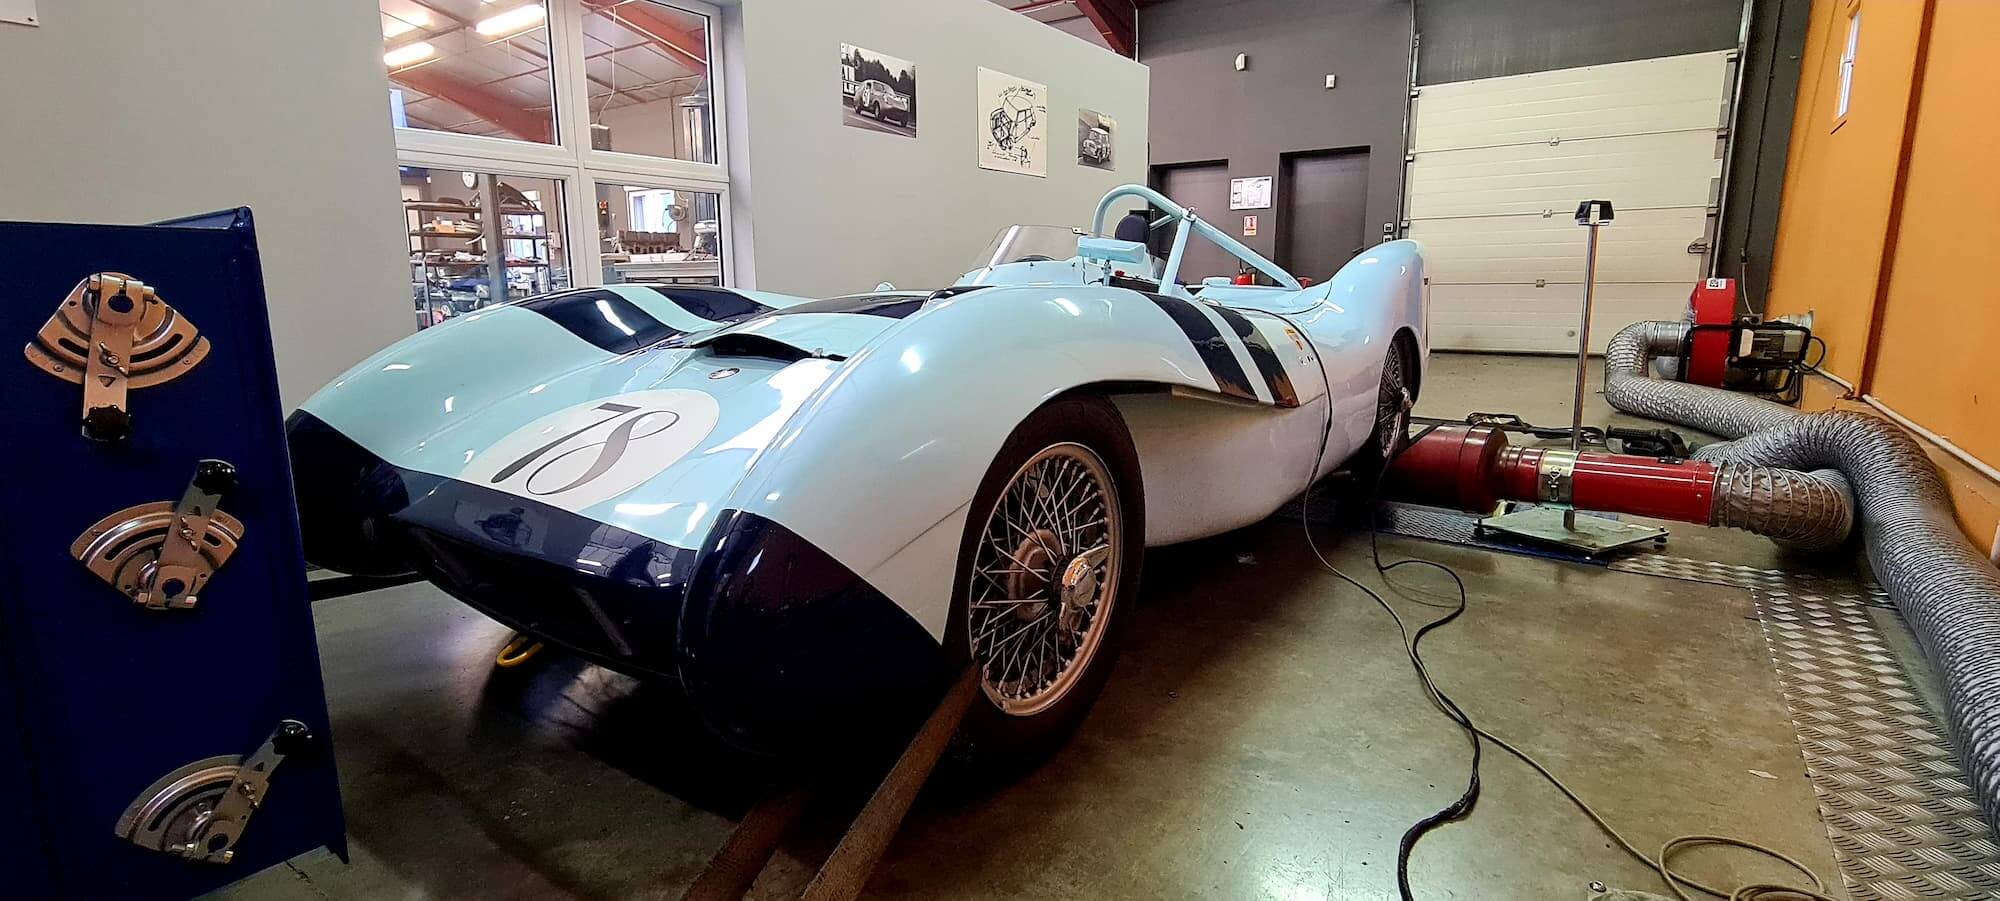 Garage des Damiers - Banc de puissance - Rotronics - Réglage moteur - Historic racing - British racing - Classic cars - Lotus XI -